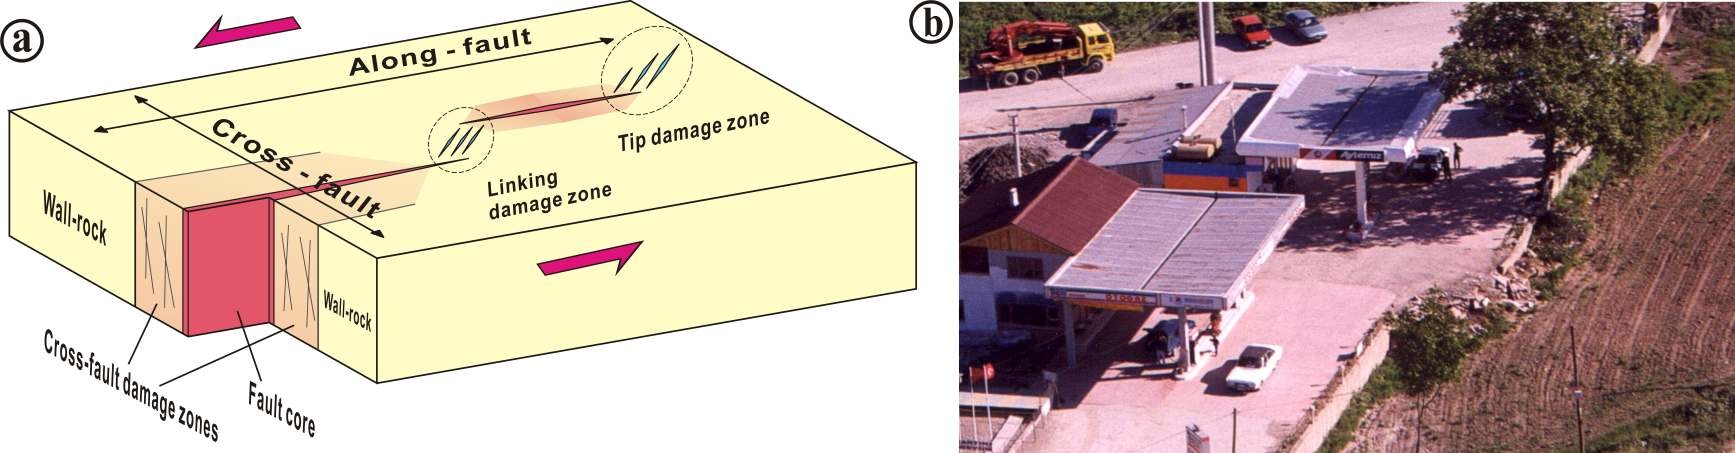 그림 1.1-20. 단층손상대의 분류에 대한 모식도와 1999년 Izmit 지진(Mw=7.4)에 의한 지표파열